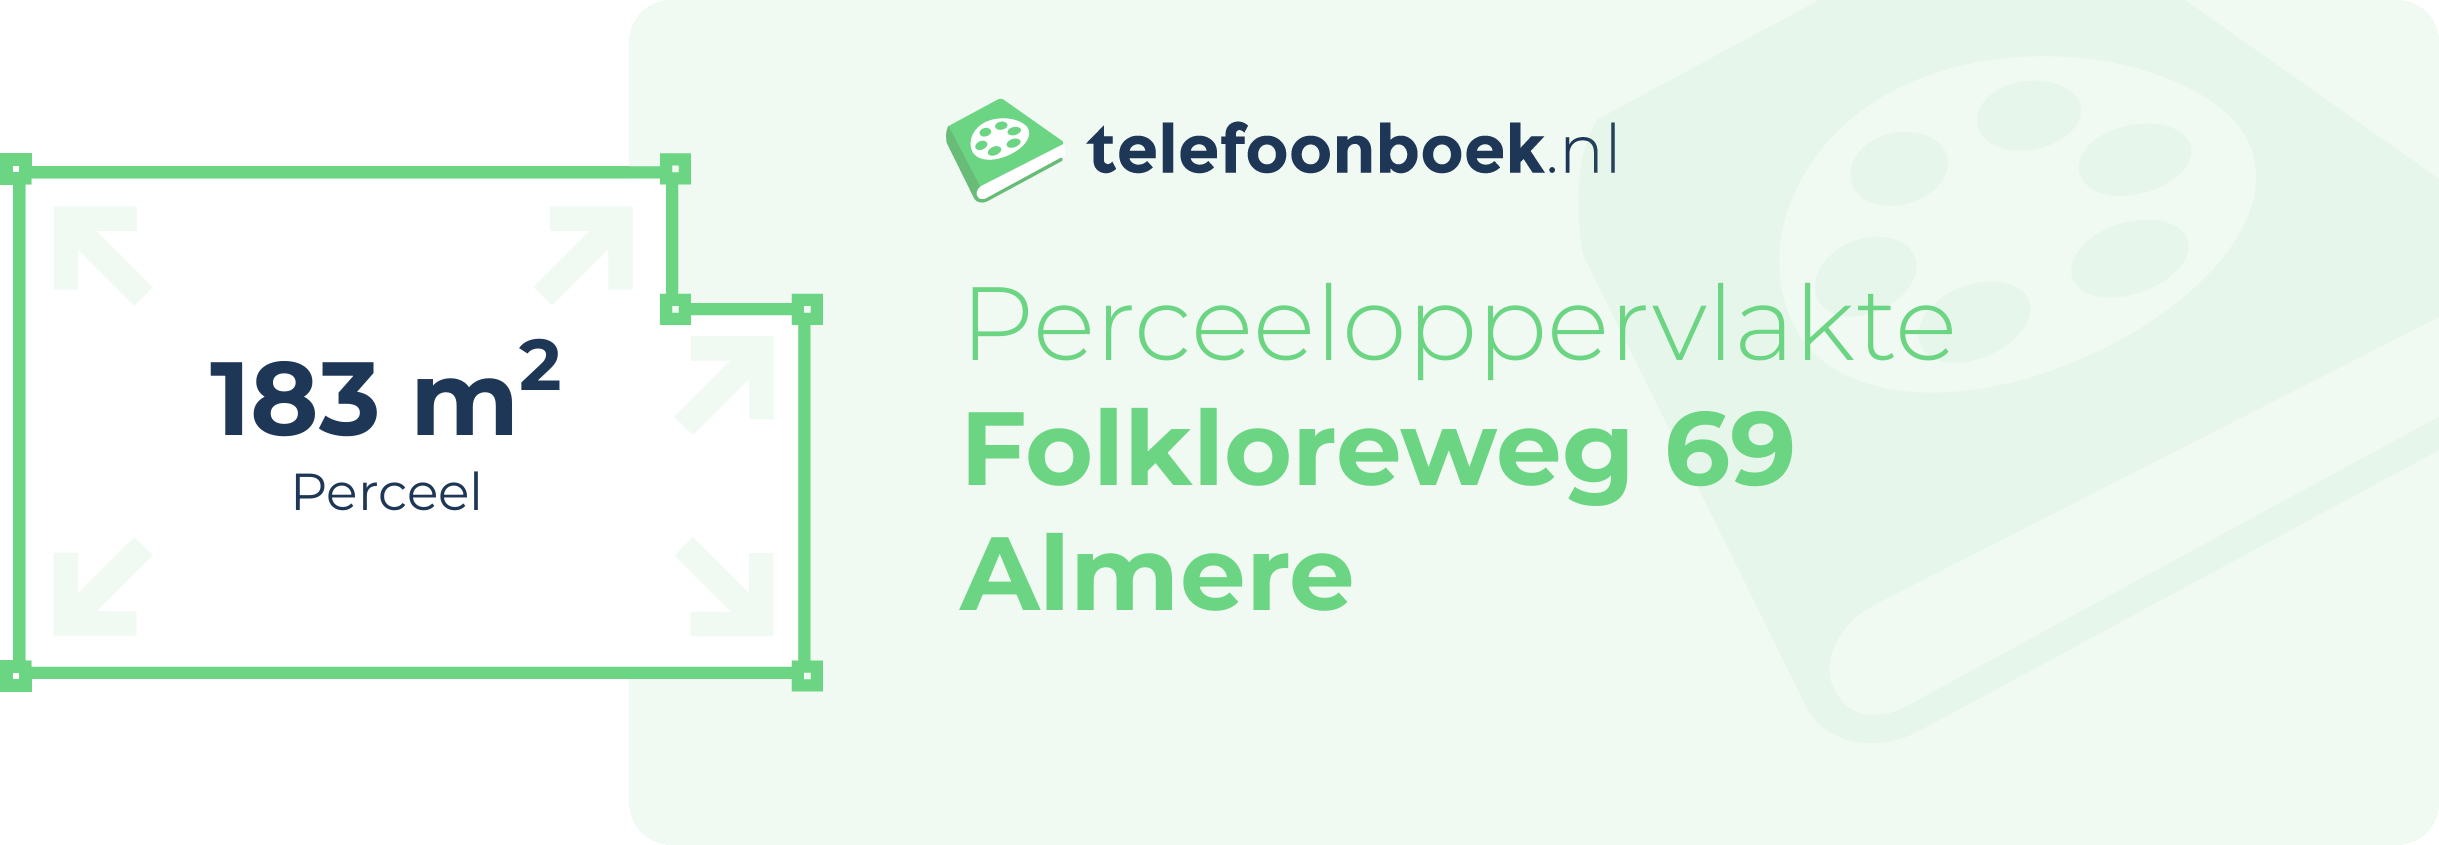 Perceeloppervlakte Folkloreweg 69 Almere